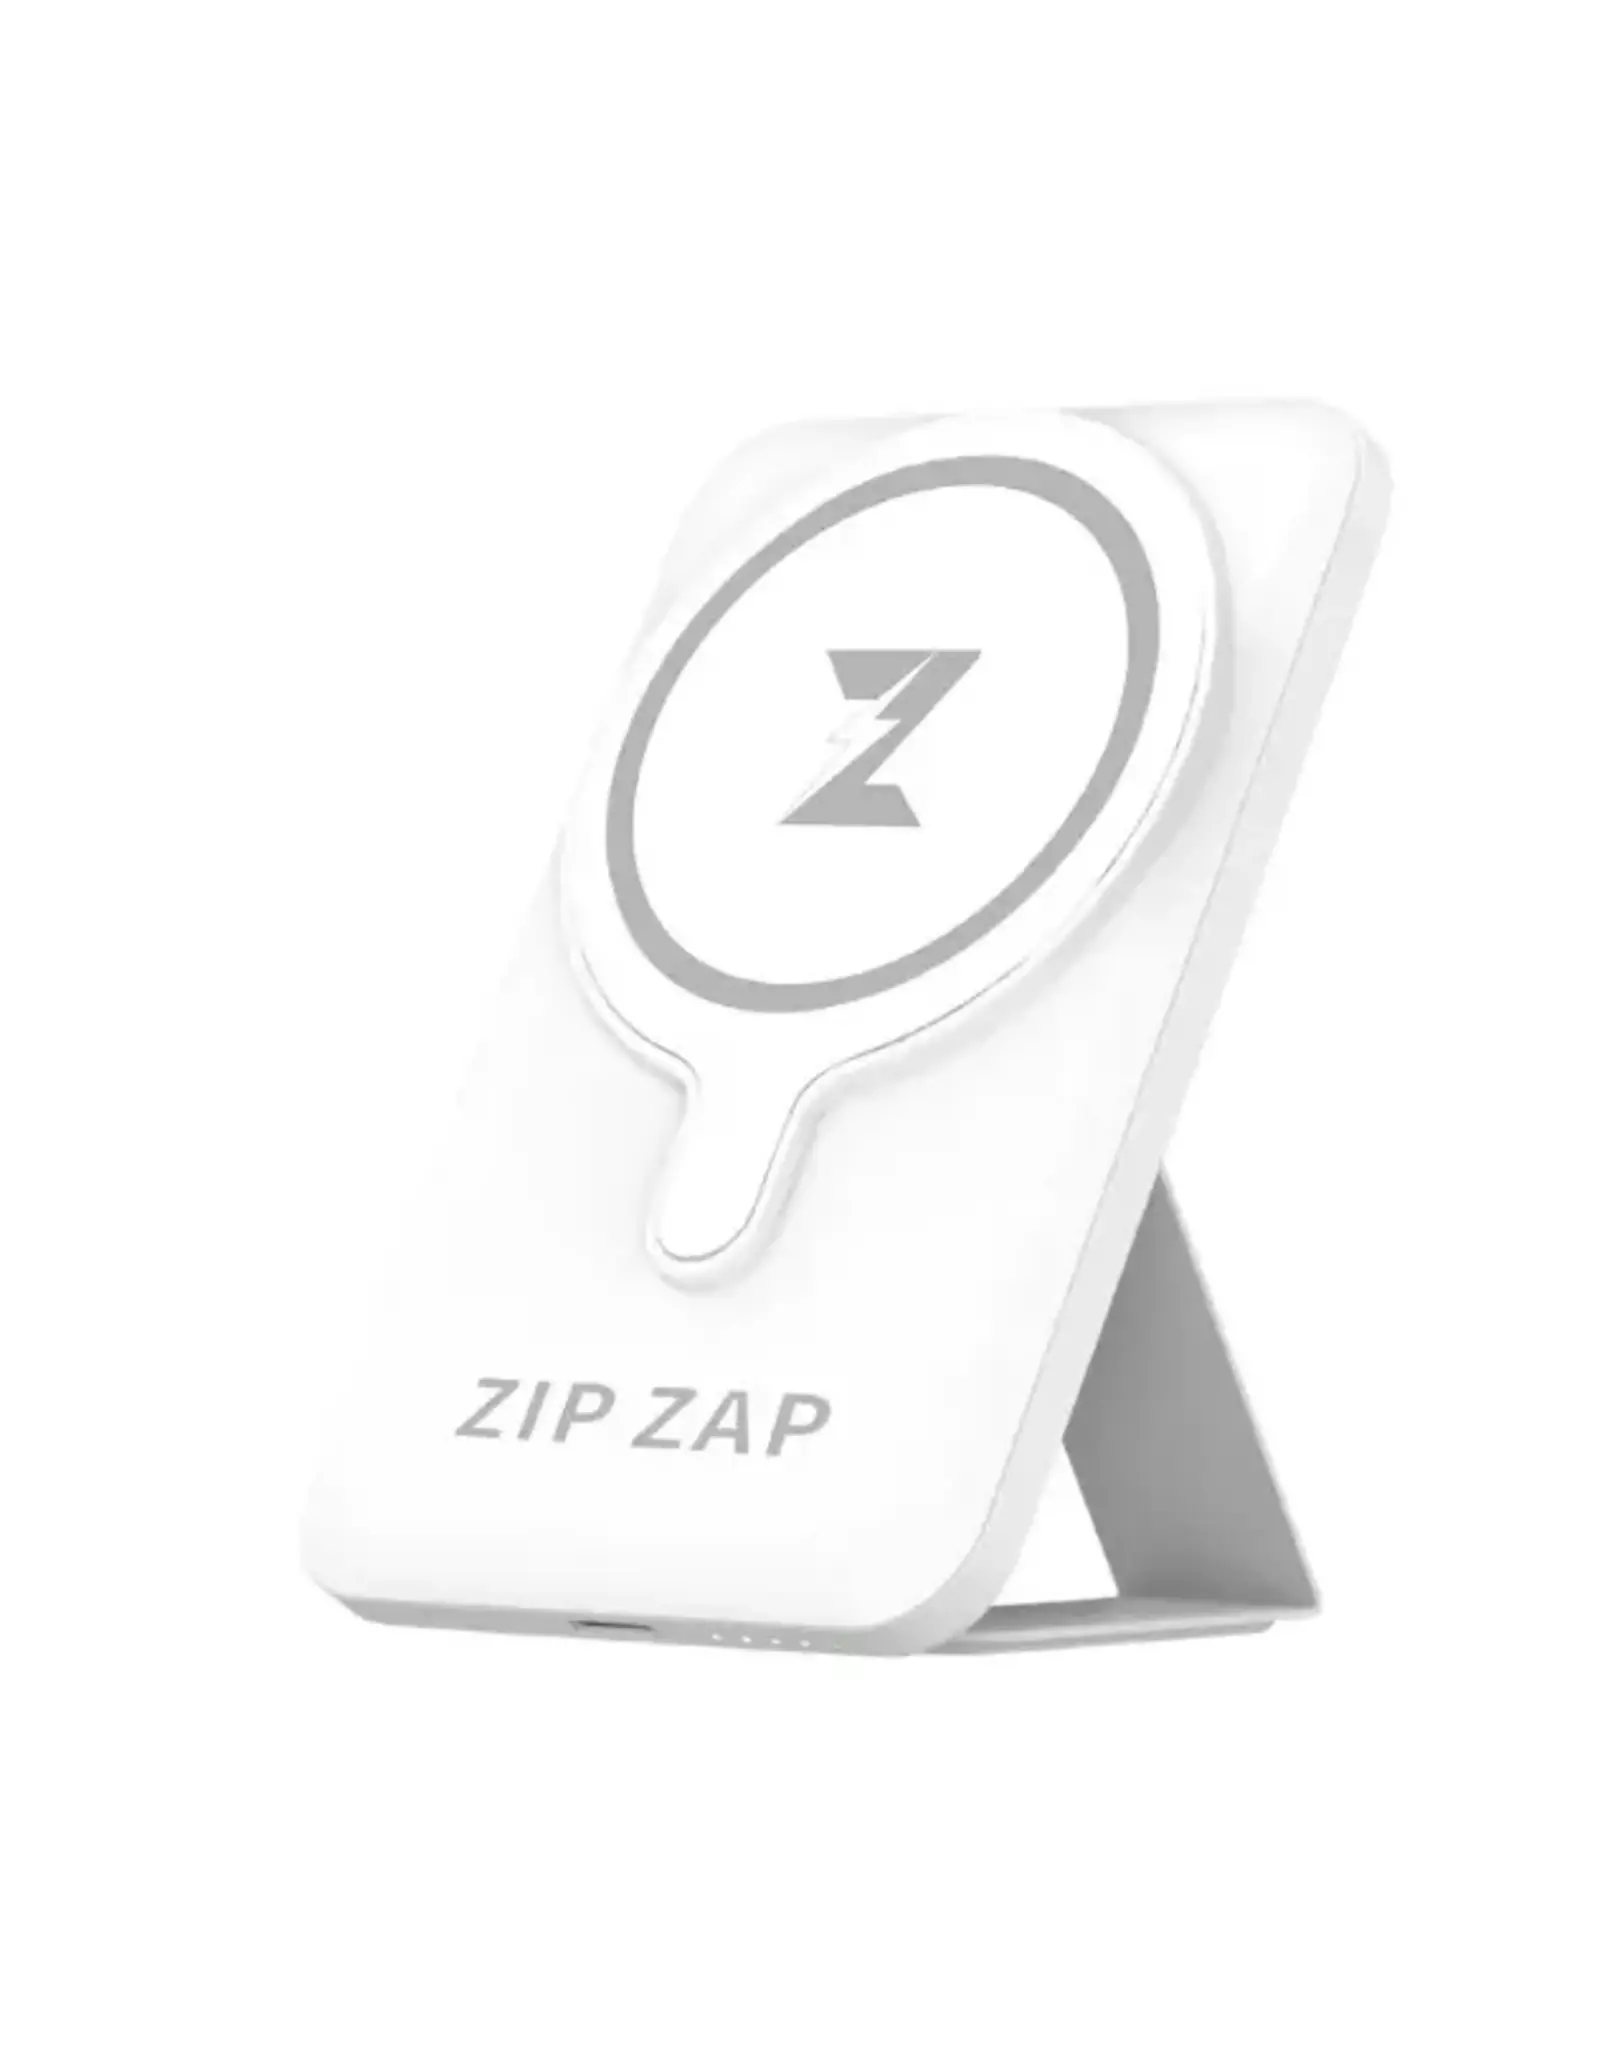 Zip Zap Zip Zap Zap Pad 5000mAh Wireless Magnetic Power Bank